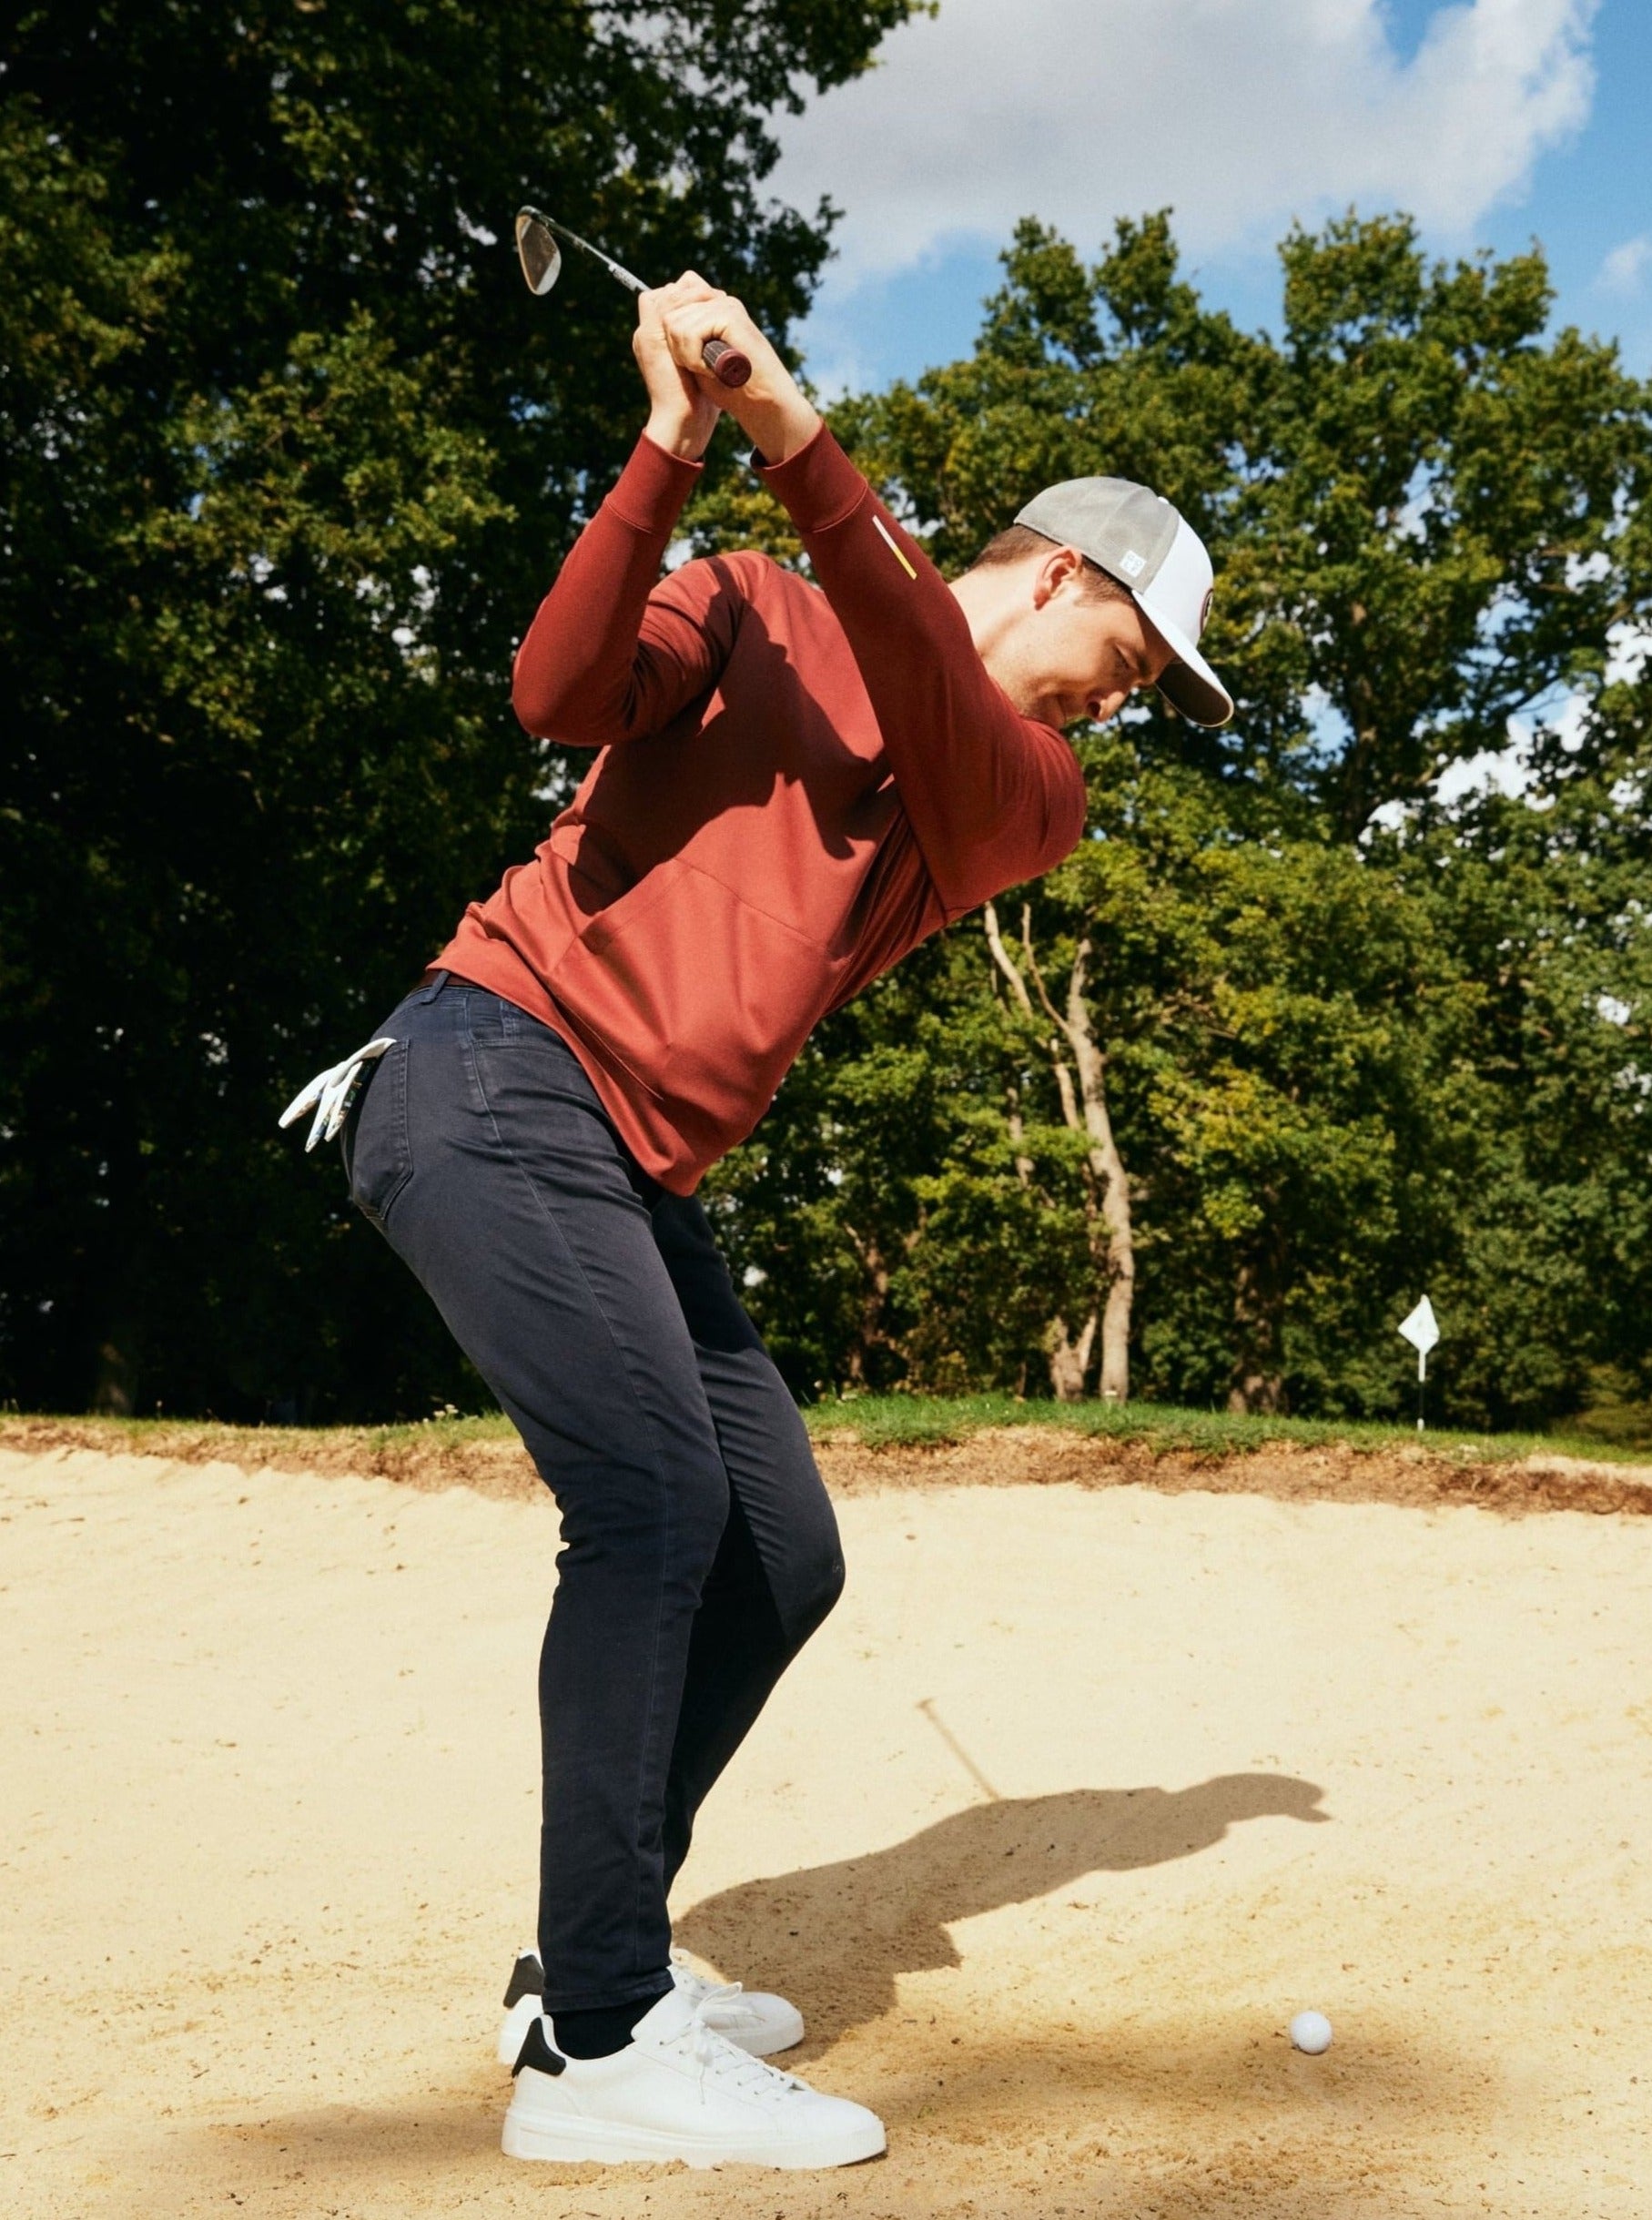 Golfer taking bunker shot